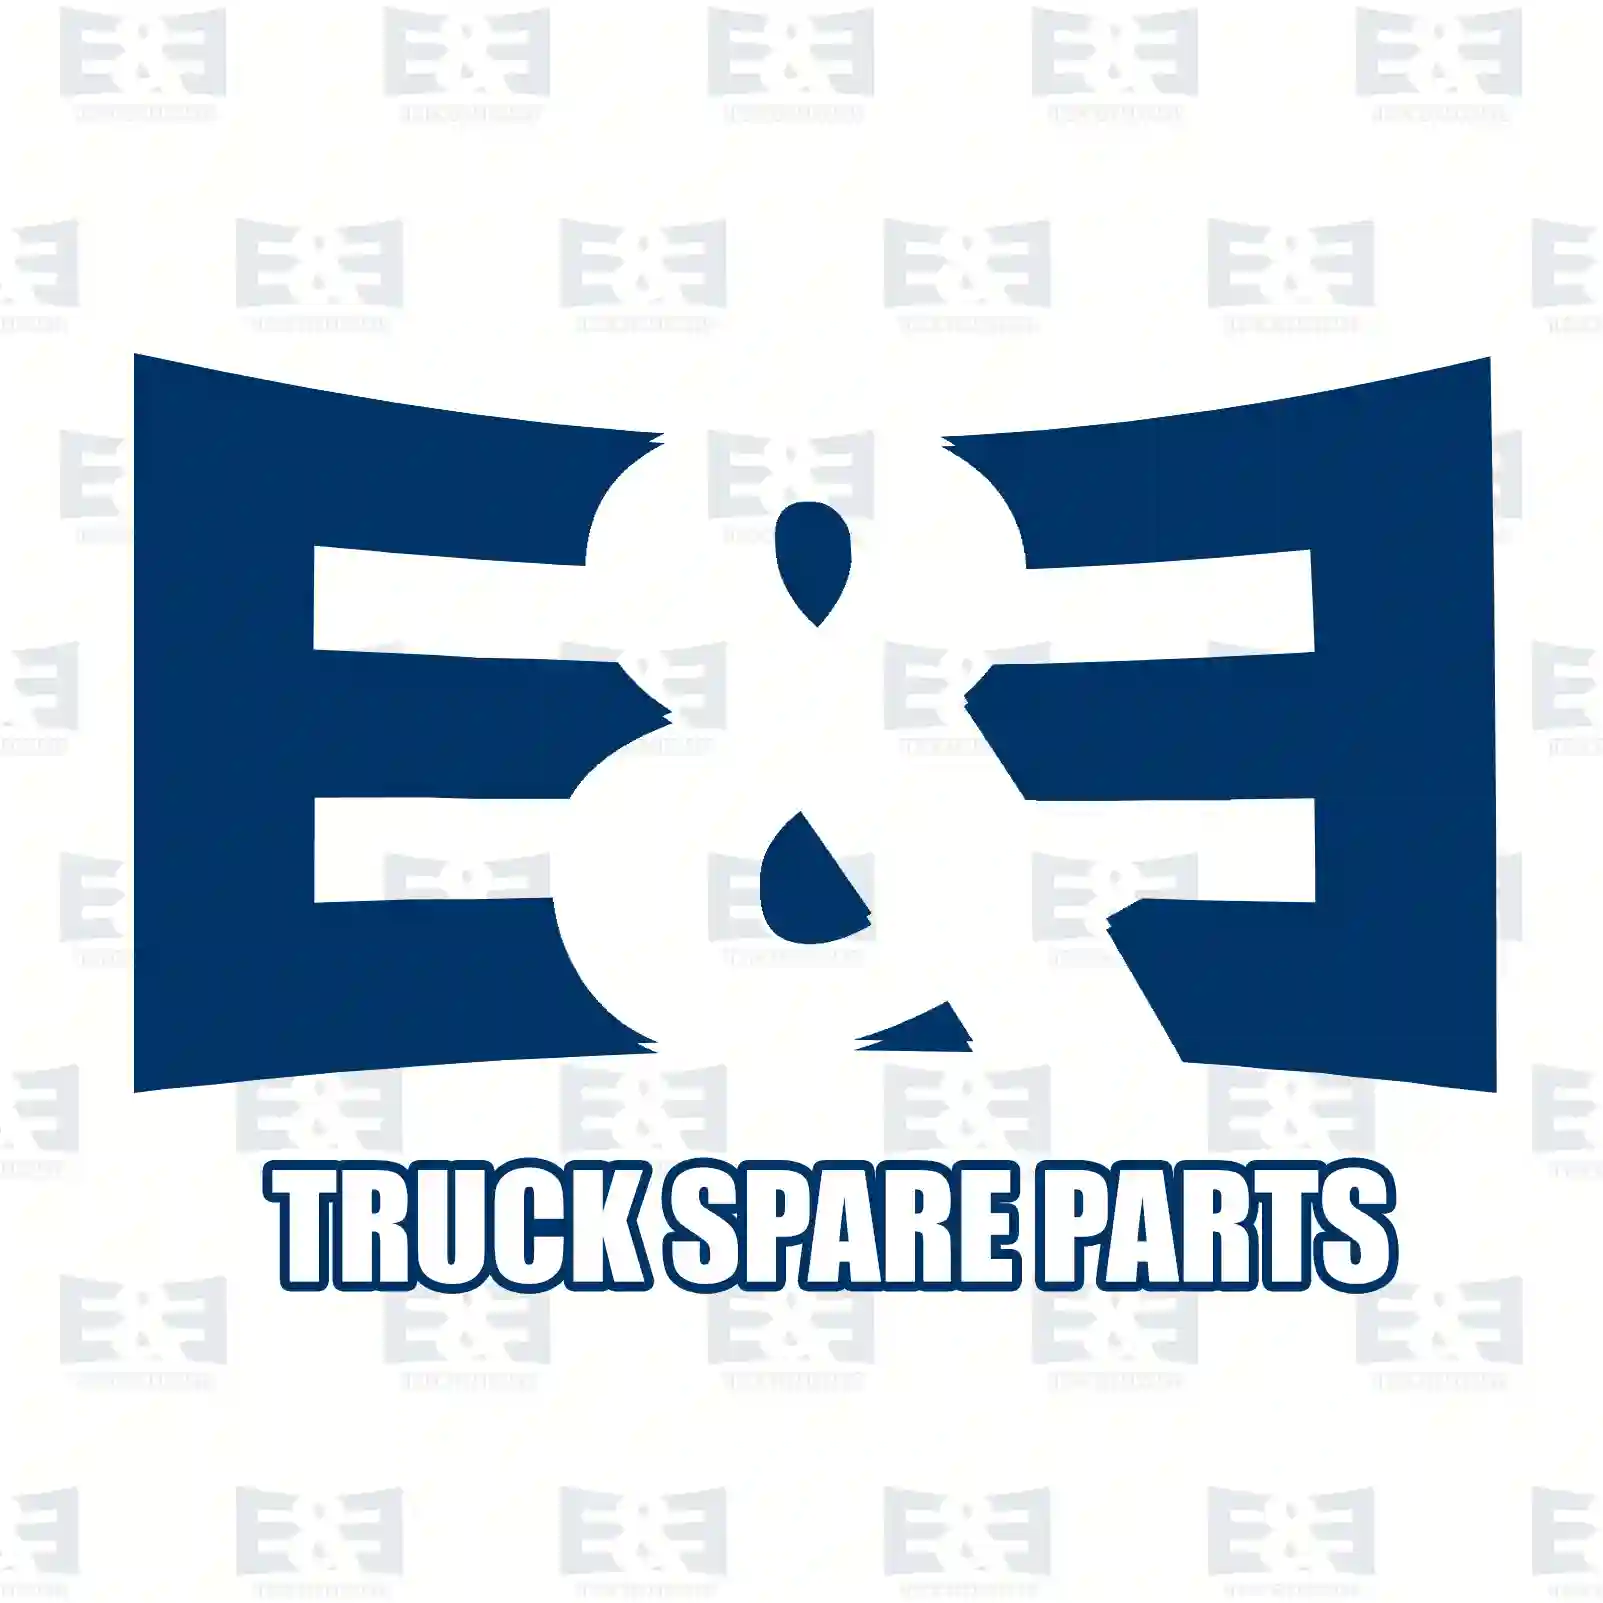 Rotation sensor, 2E2298754, 4545F2, 4545H1, 51725100, 51787753, 4545F2, 4545H1 ||  2E2298754 E&E Truck Spare Parts | Truck Spare Parts, Auotomotive Spare Parts Rotation sensor, 2E2298754, 4545F2, 4545H1, 51725100, 51787753, 4545F2, 4545H1 ||  2E2298754 E&E Truck Spare Parts | Truck Spare Parts, Auotomotive Spare Parts